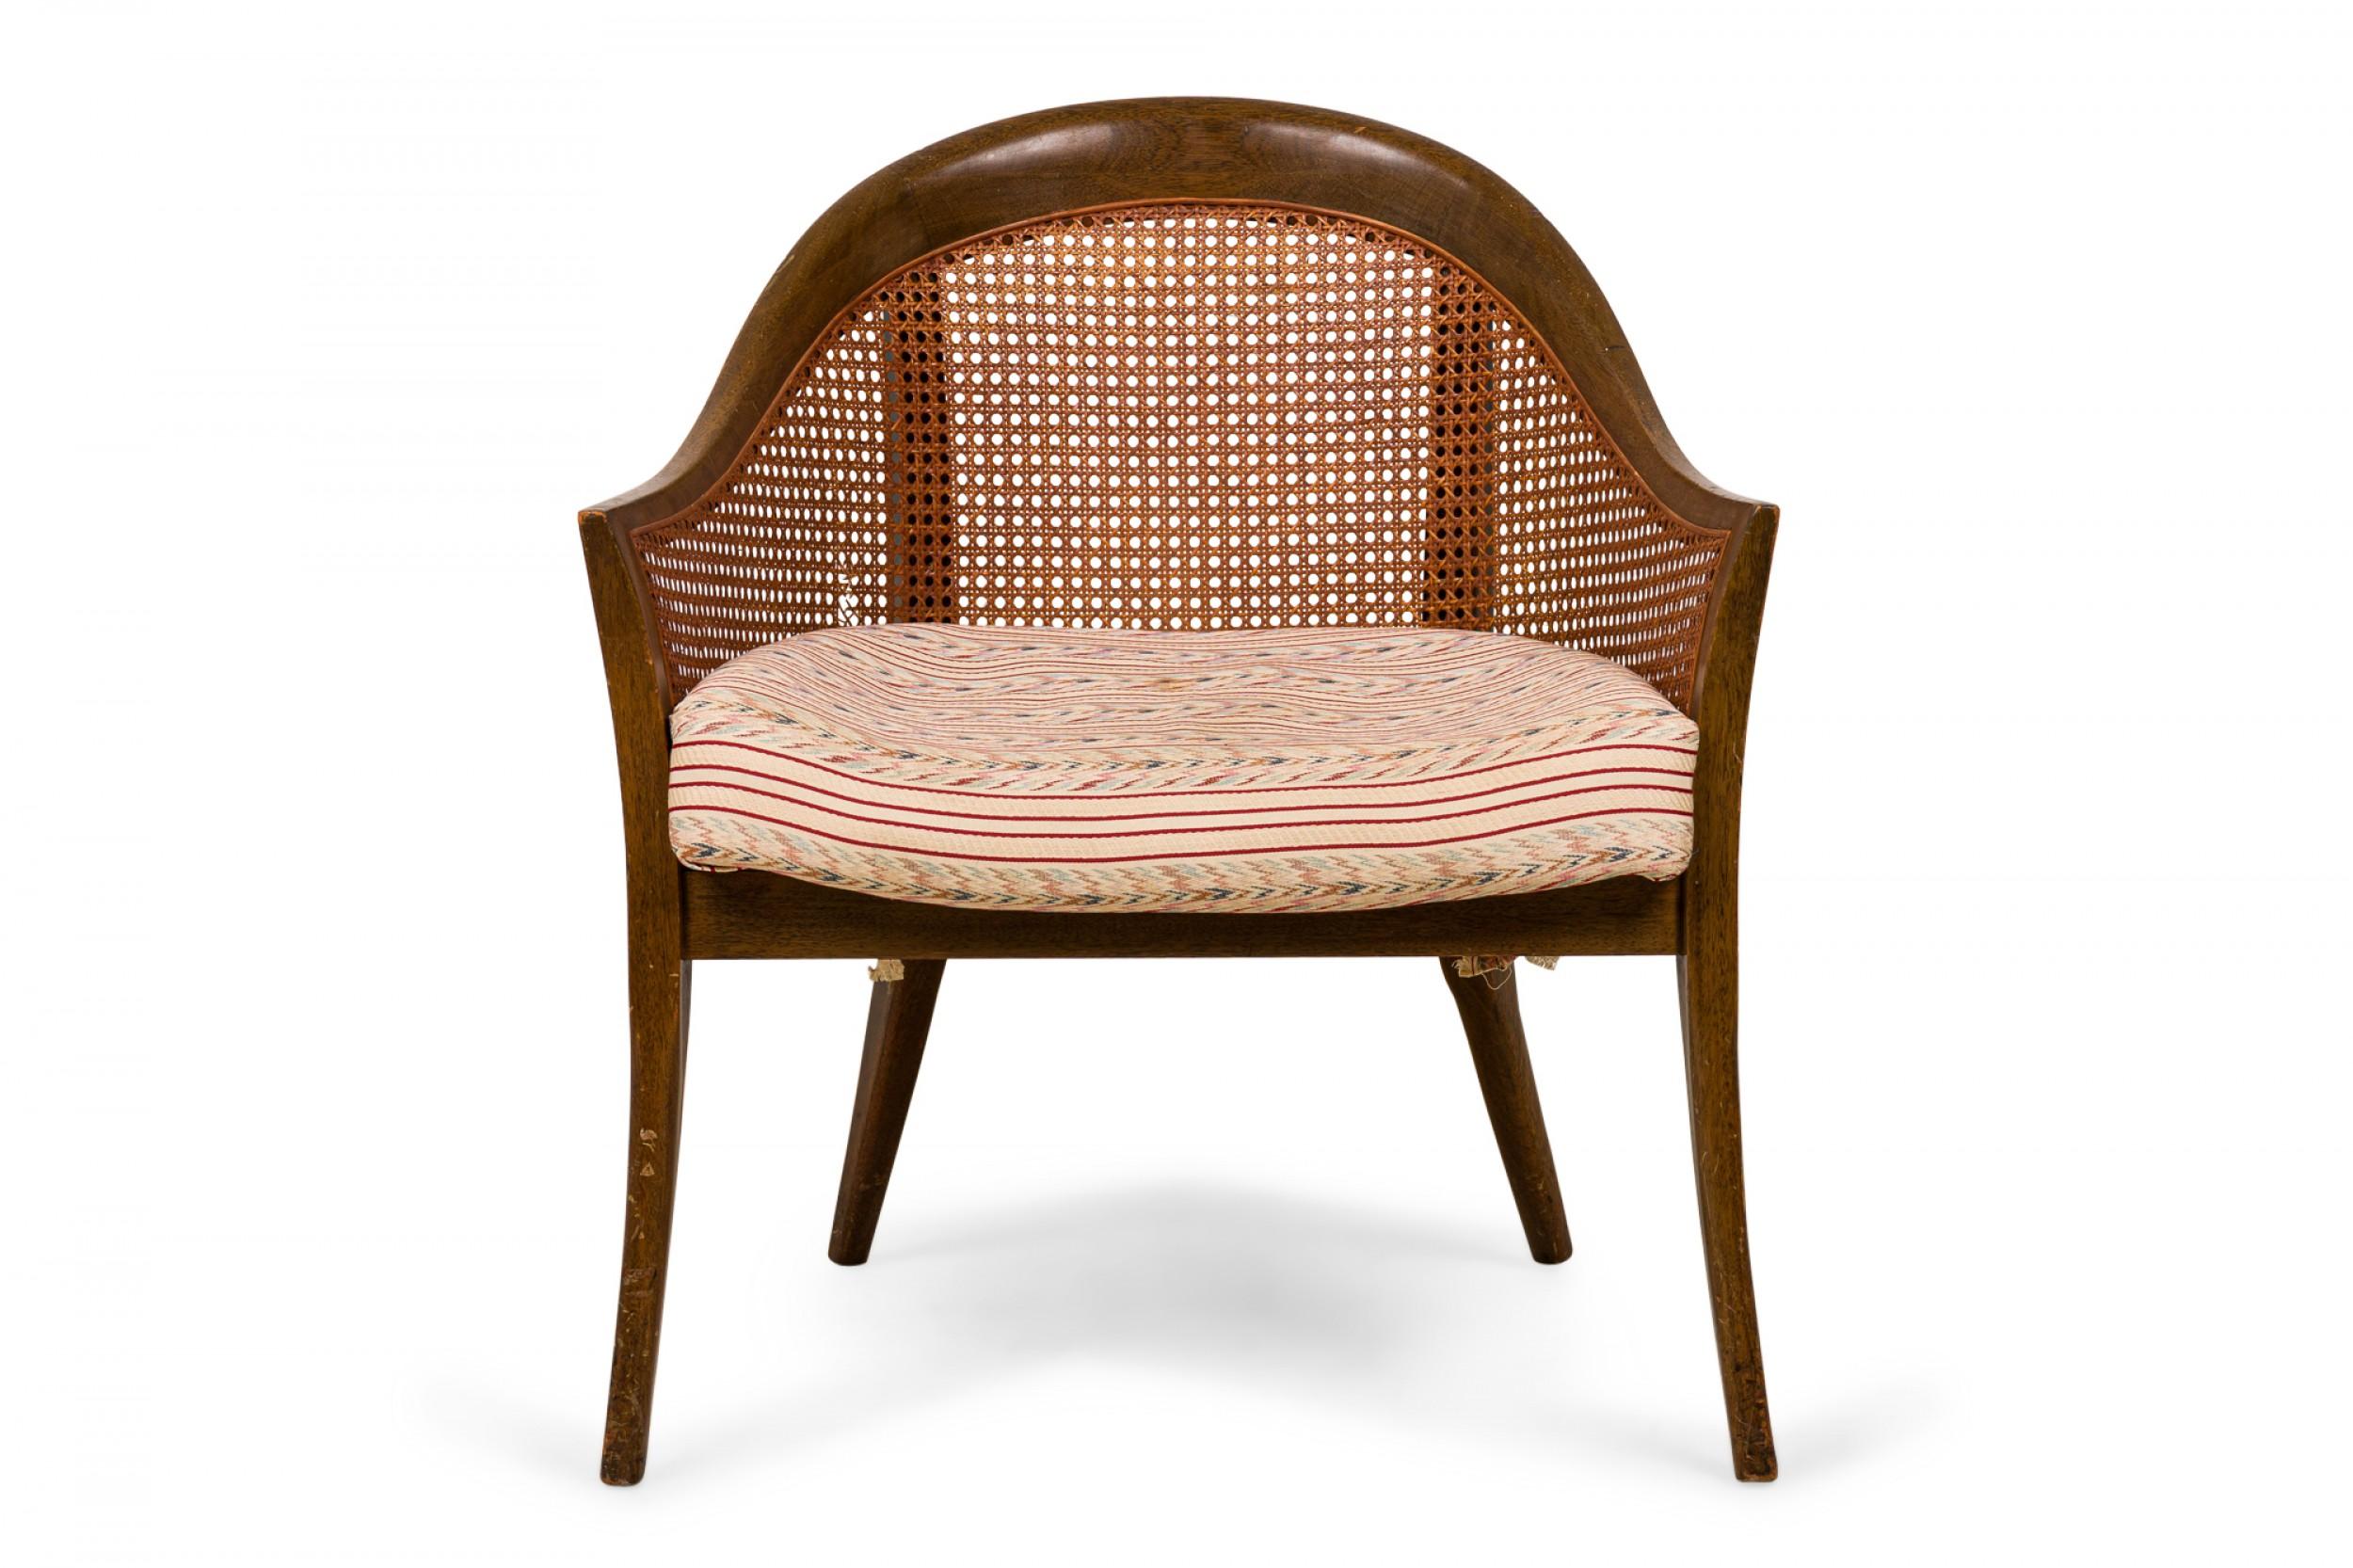 Amerikanischer Sessel aus der Mitte des Jahrhunderts mit einem geschwungenen Holzrahmen, geschwungenen Seiten und Rückenlehnen und einem mehrfarbig gestreiften Sitzkissen, das auf vier konischen Holzbeinen ruht. (HARVEY PROBBER)(Ähnlicher Stuhl: